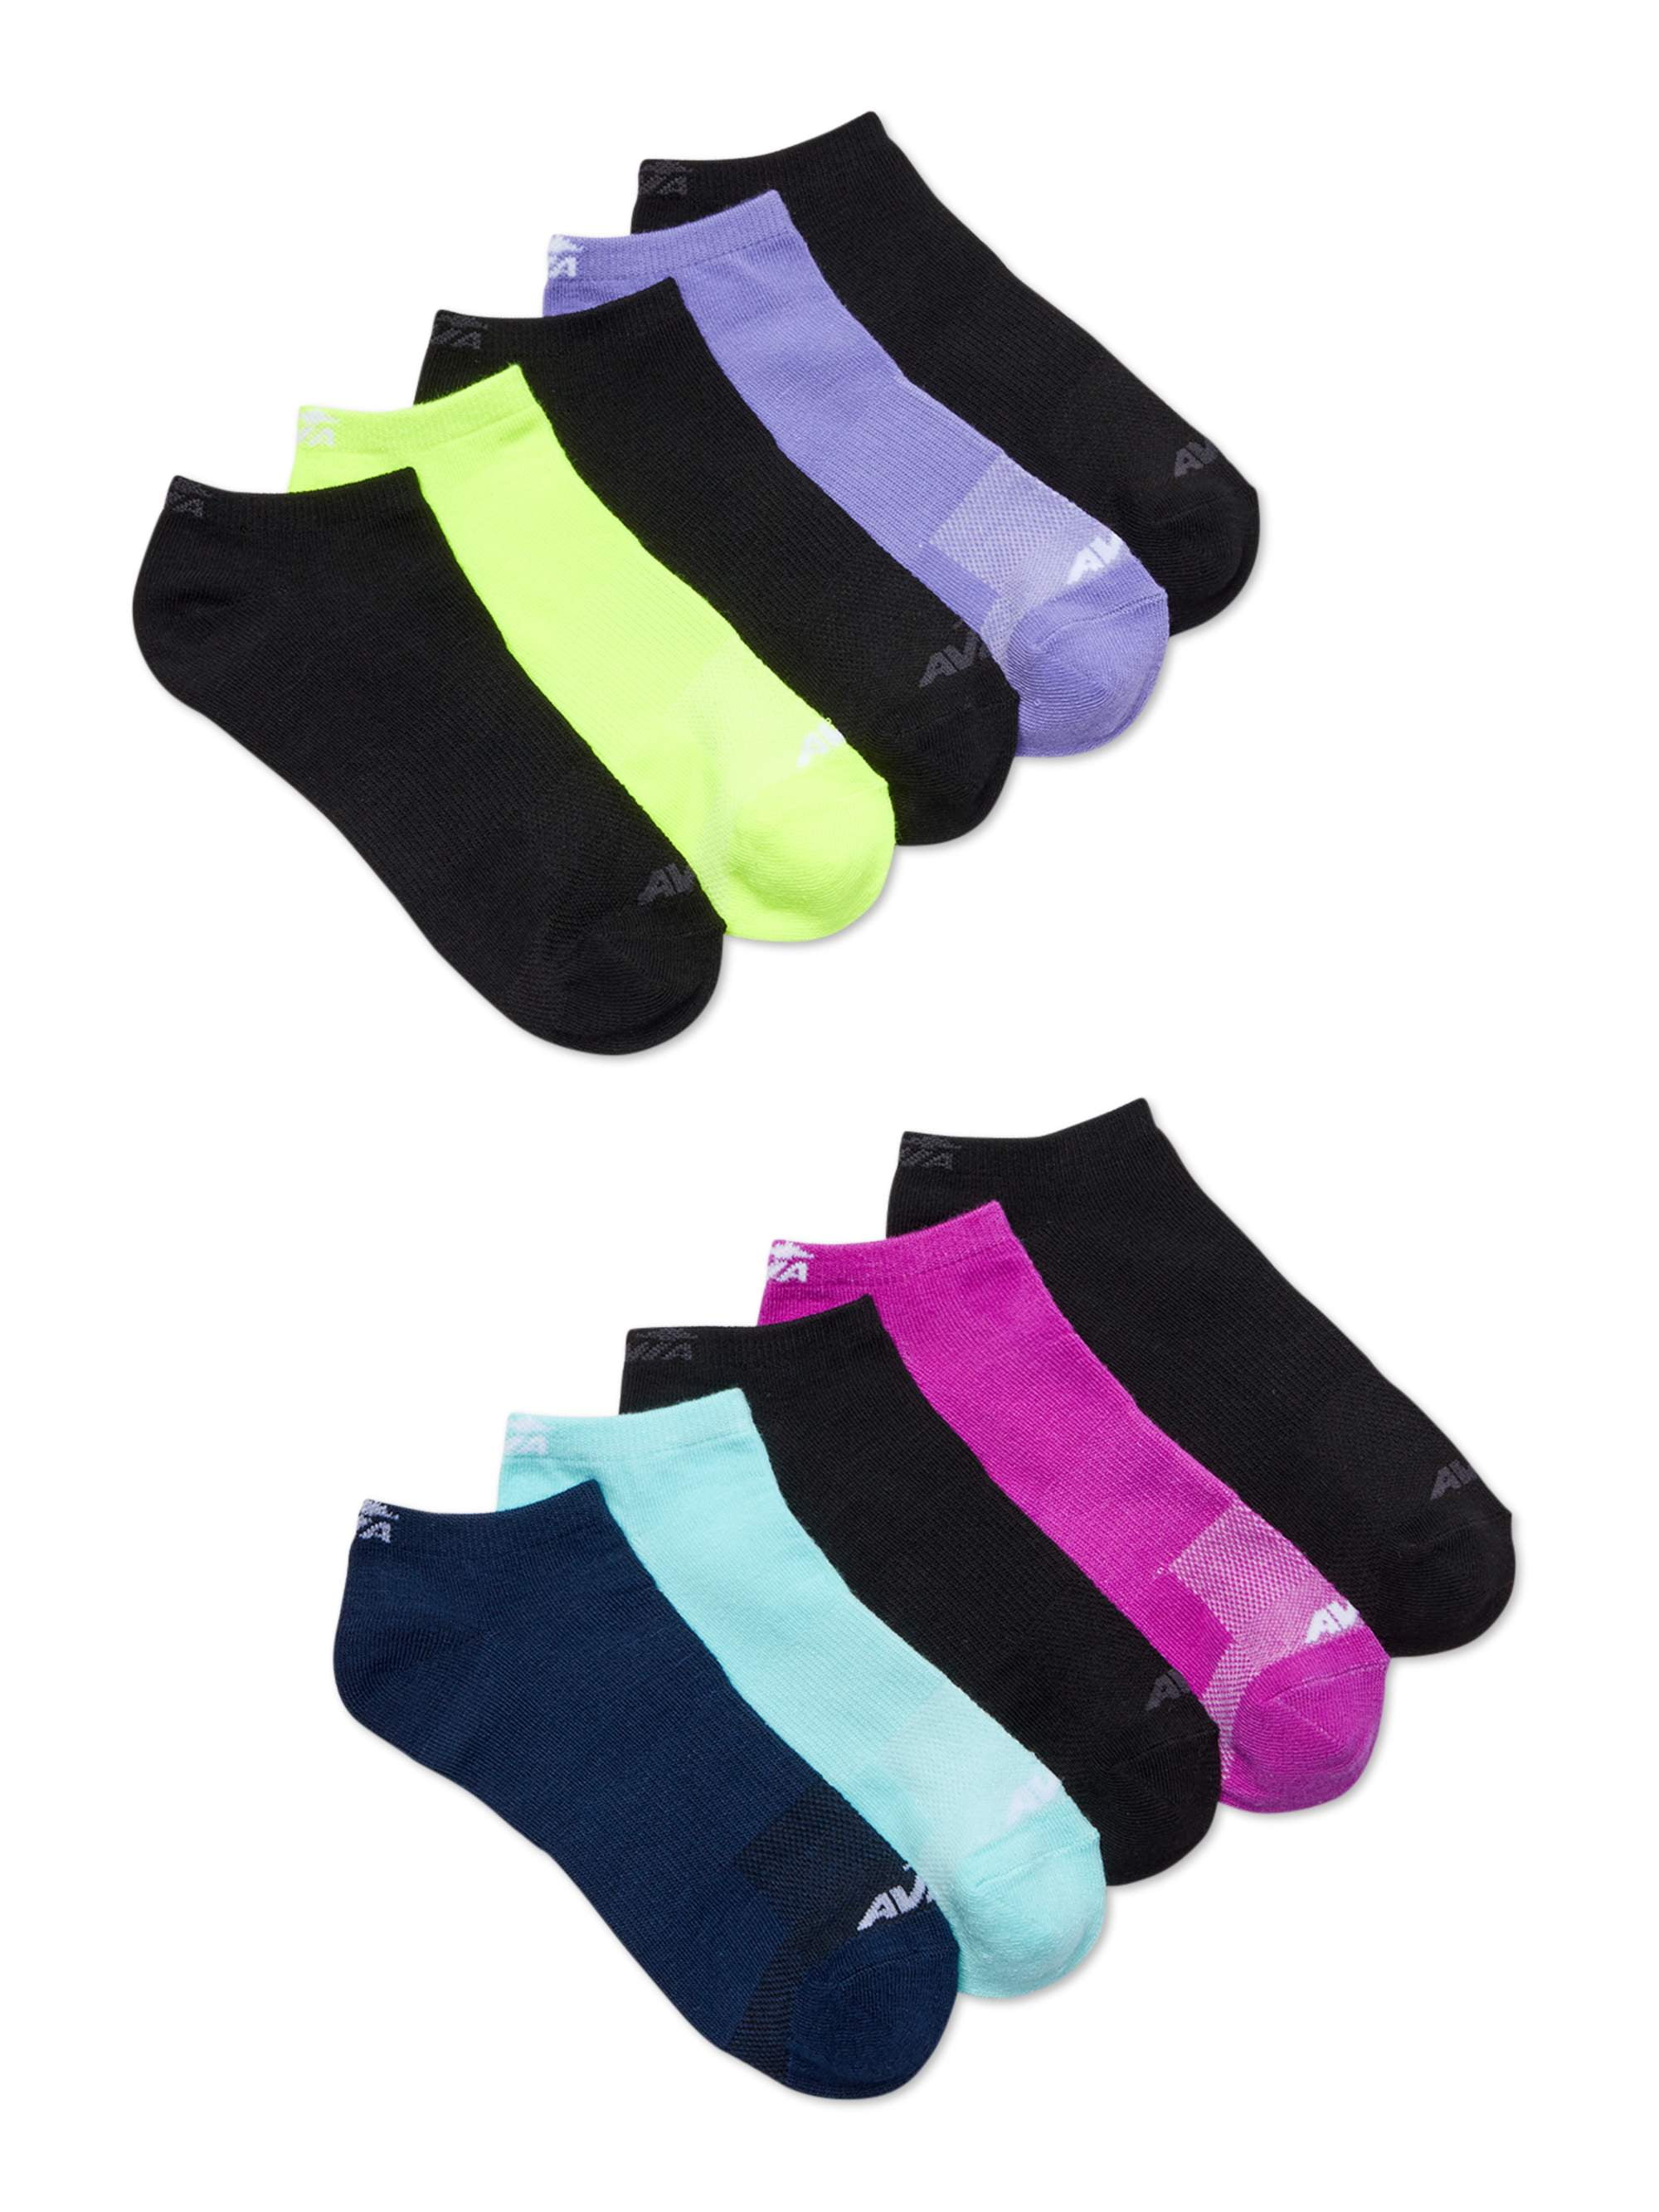 Avia Women's Performance Flatknit Lowcut Socks, 10-Pack - Walmart.com